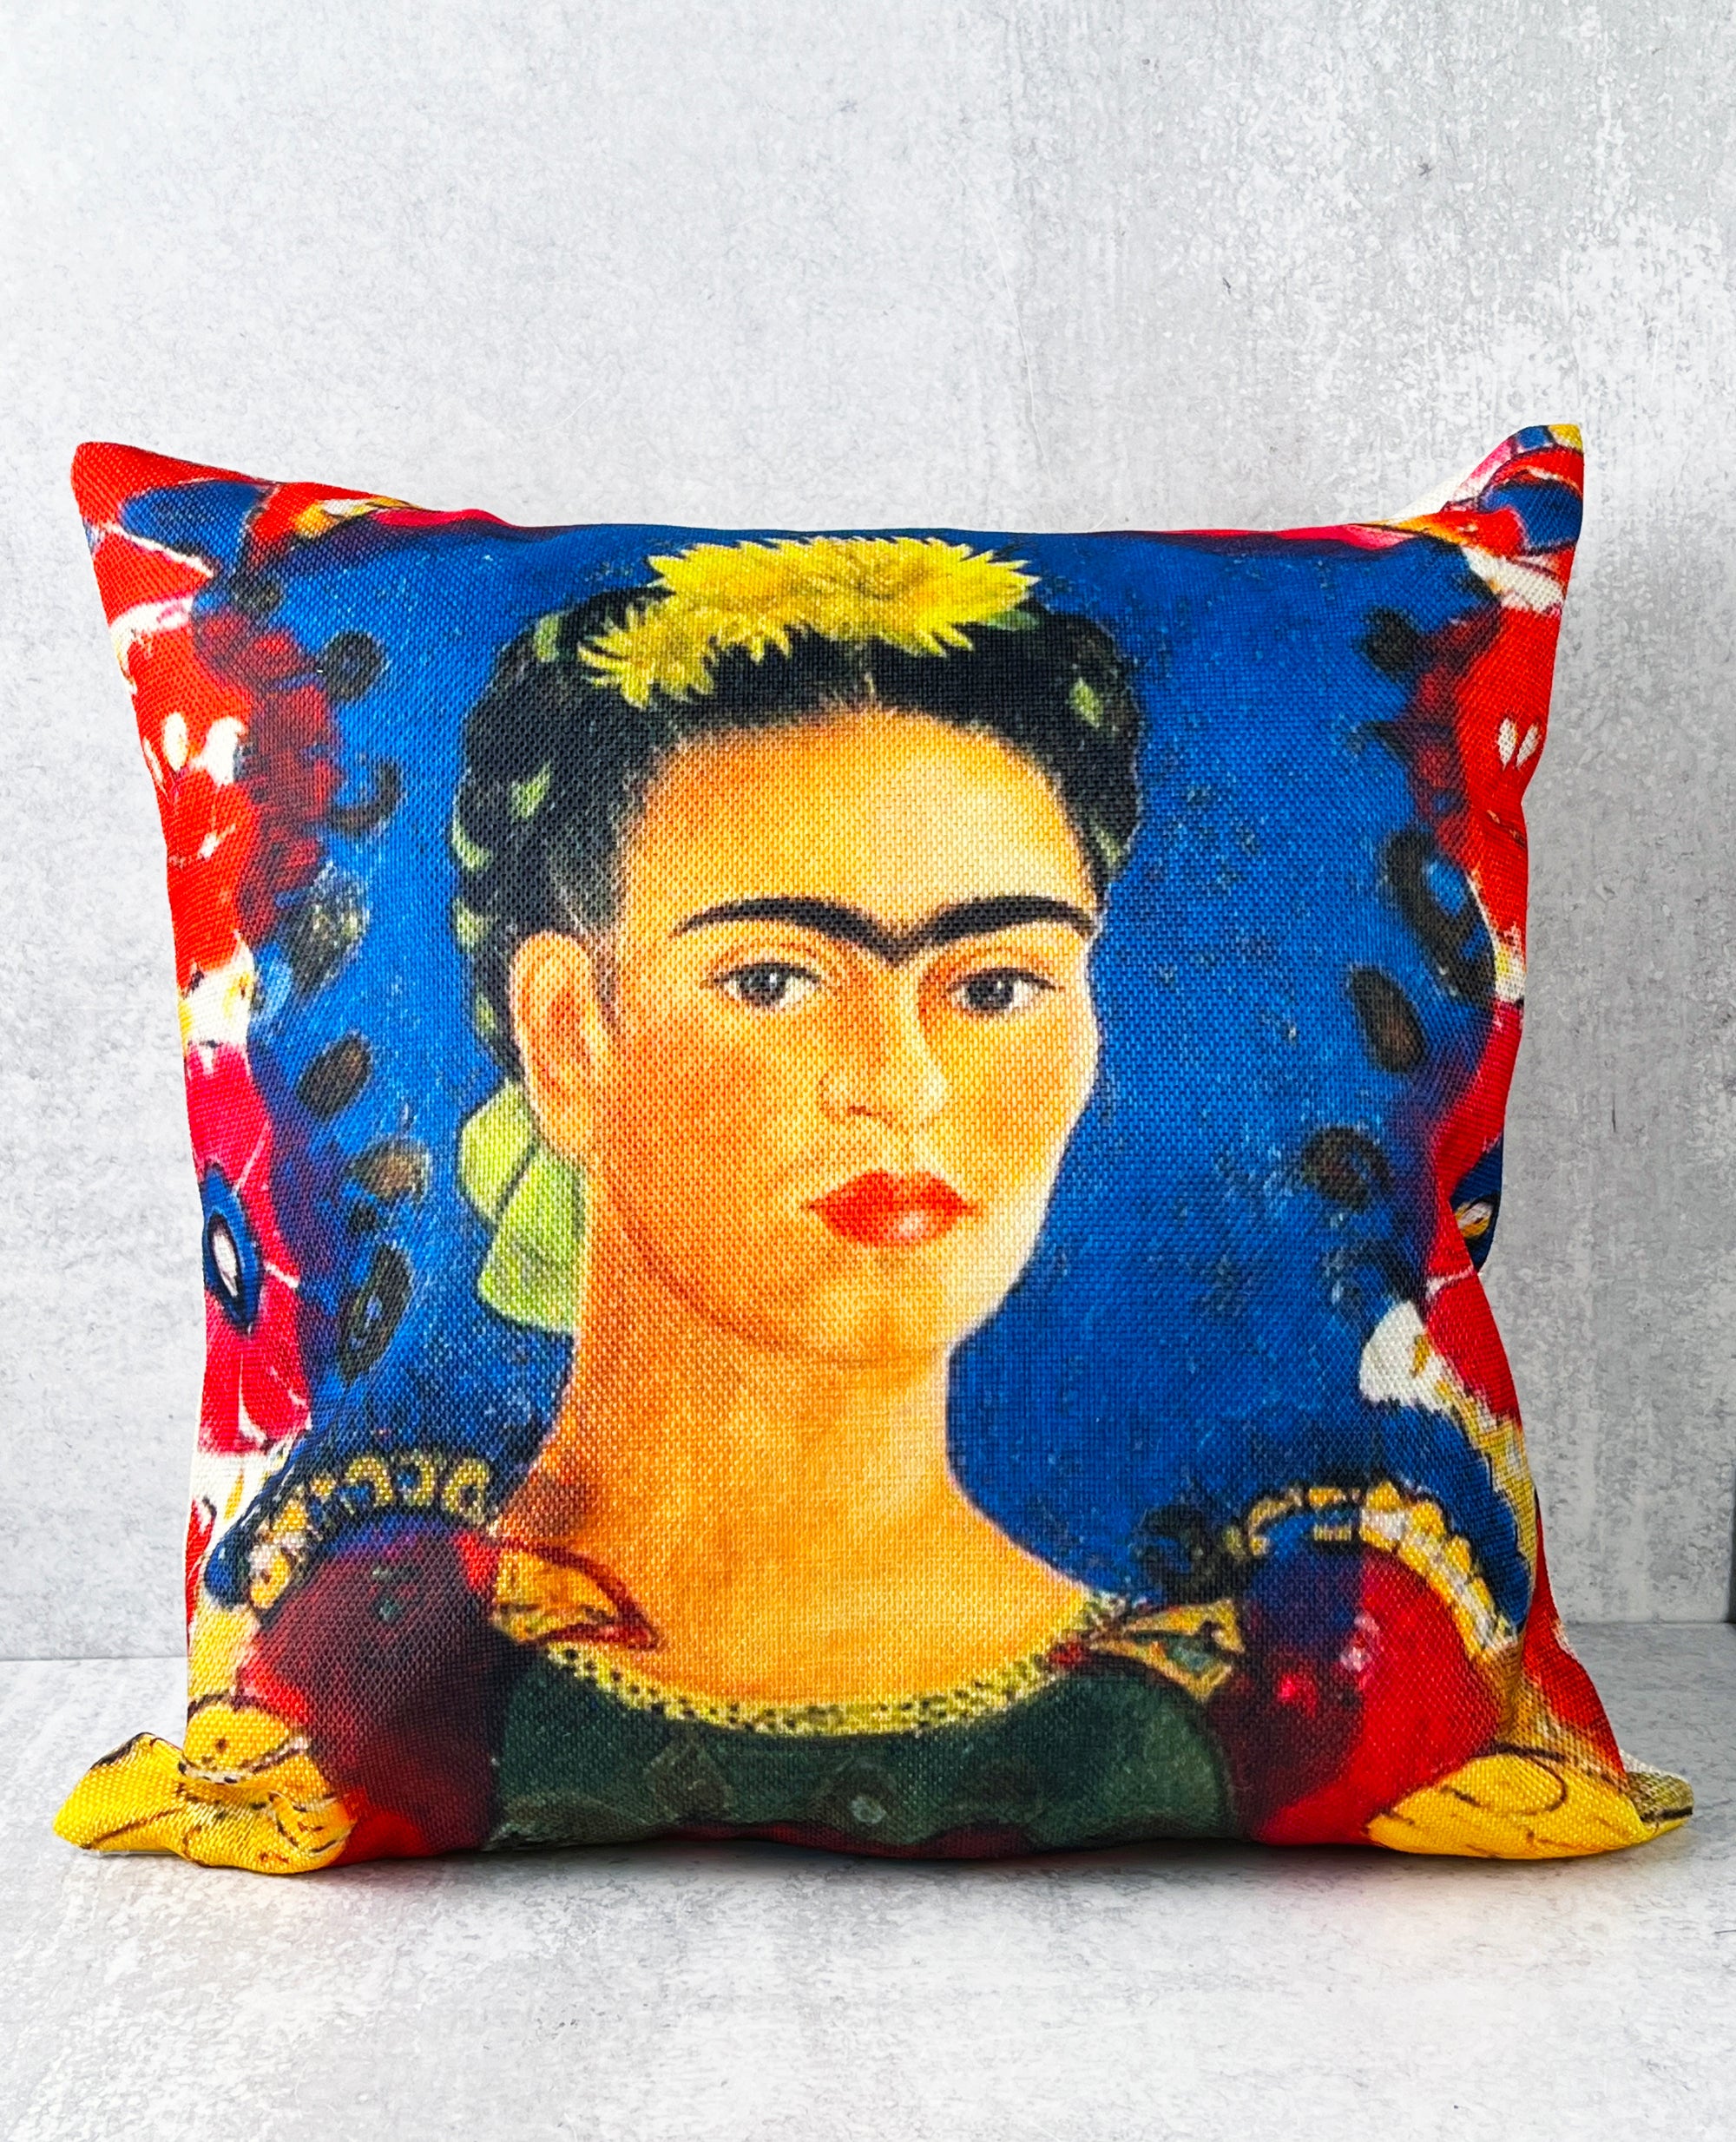 Frida Kahlo ‘The Frame’ Pillow